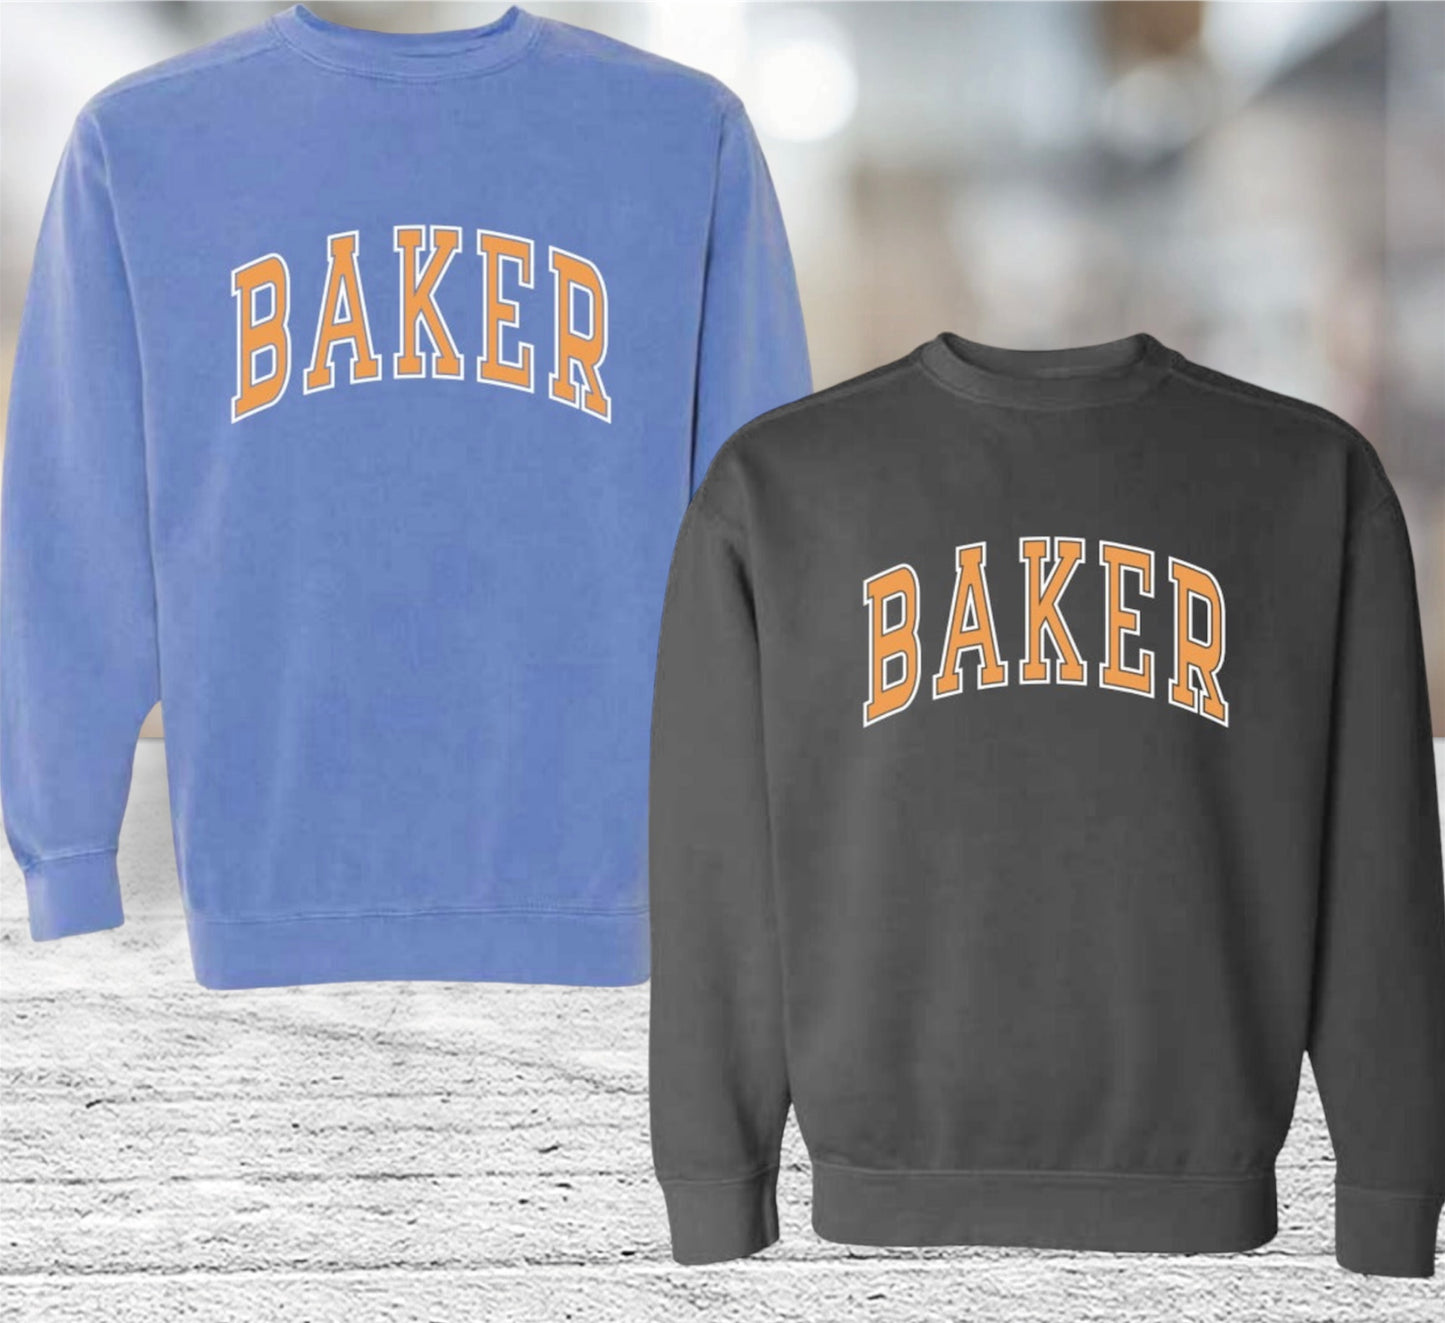 Baker Comfort Colors Crewneck Sweatshirt